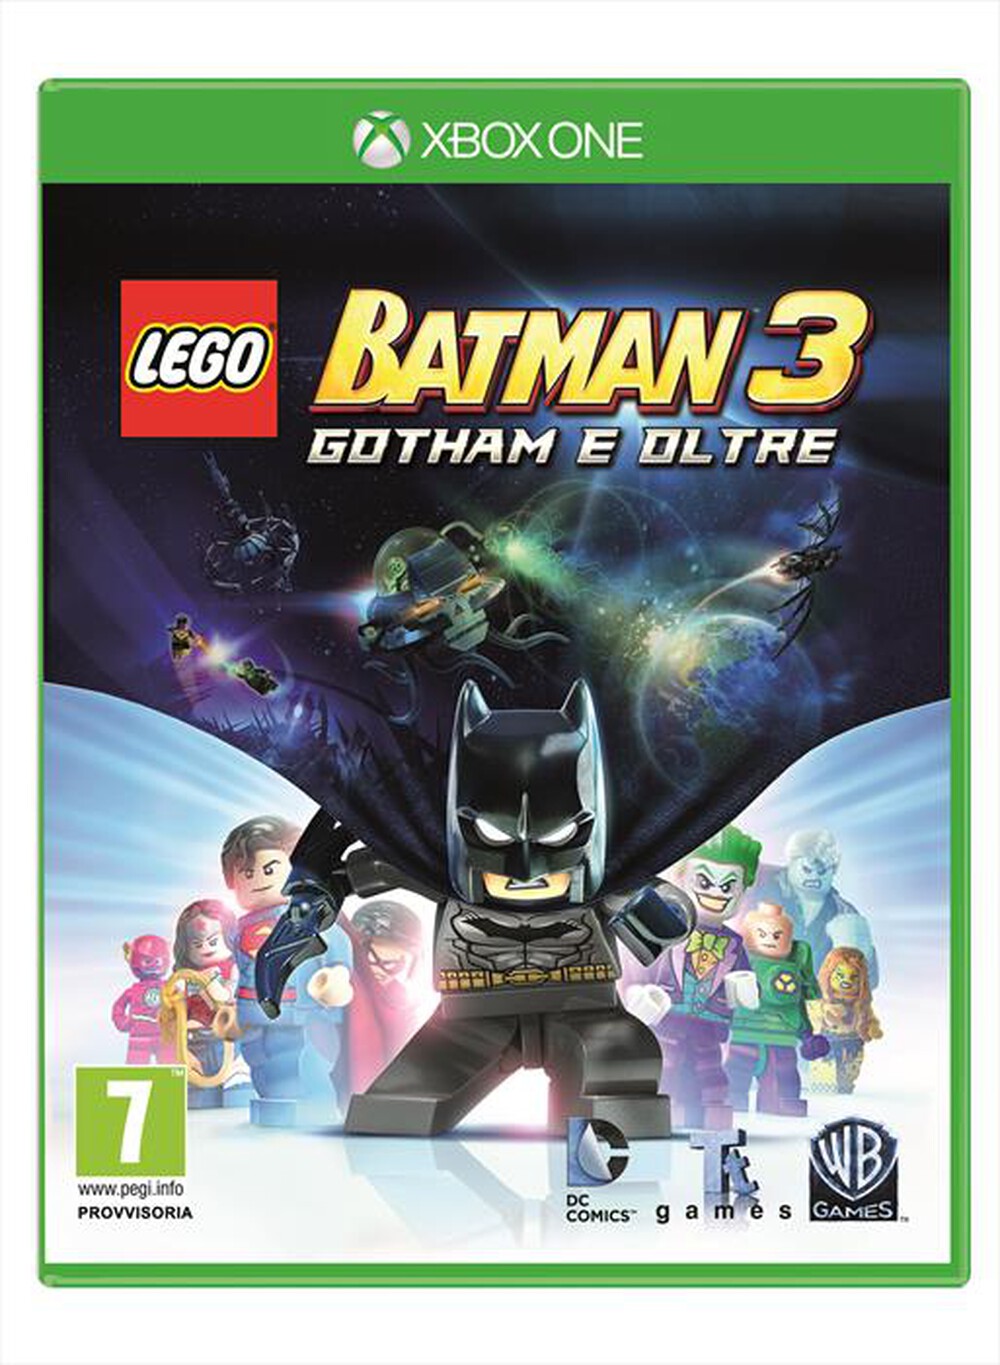 "WARNER GAMES - Lego Batman 3 Xbox One"